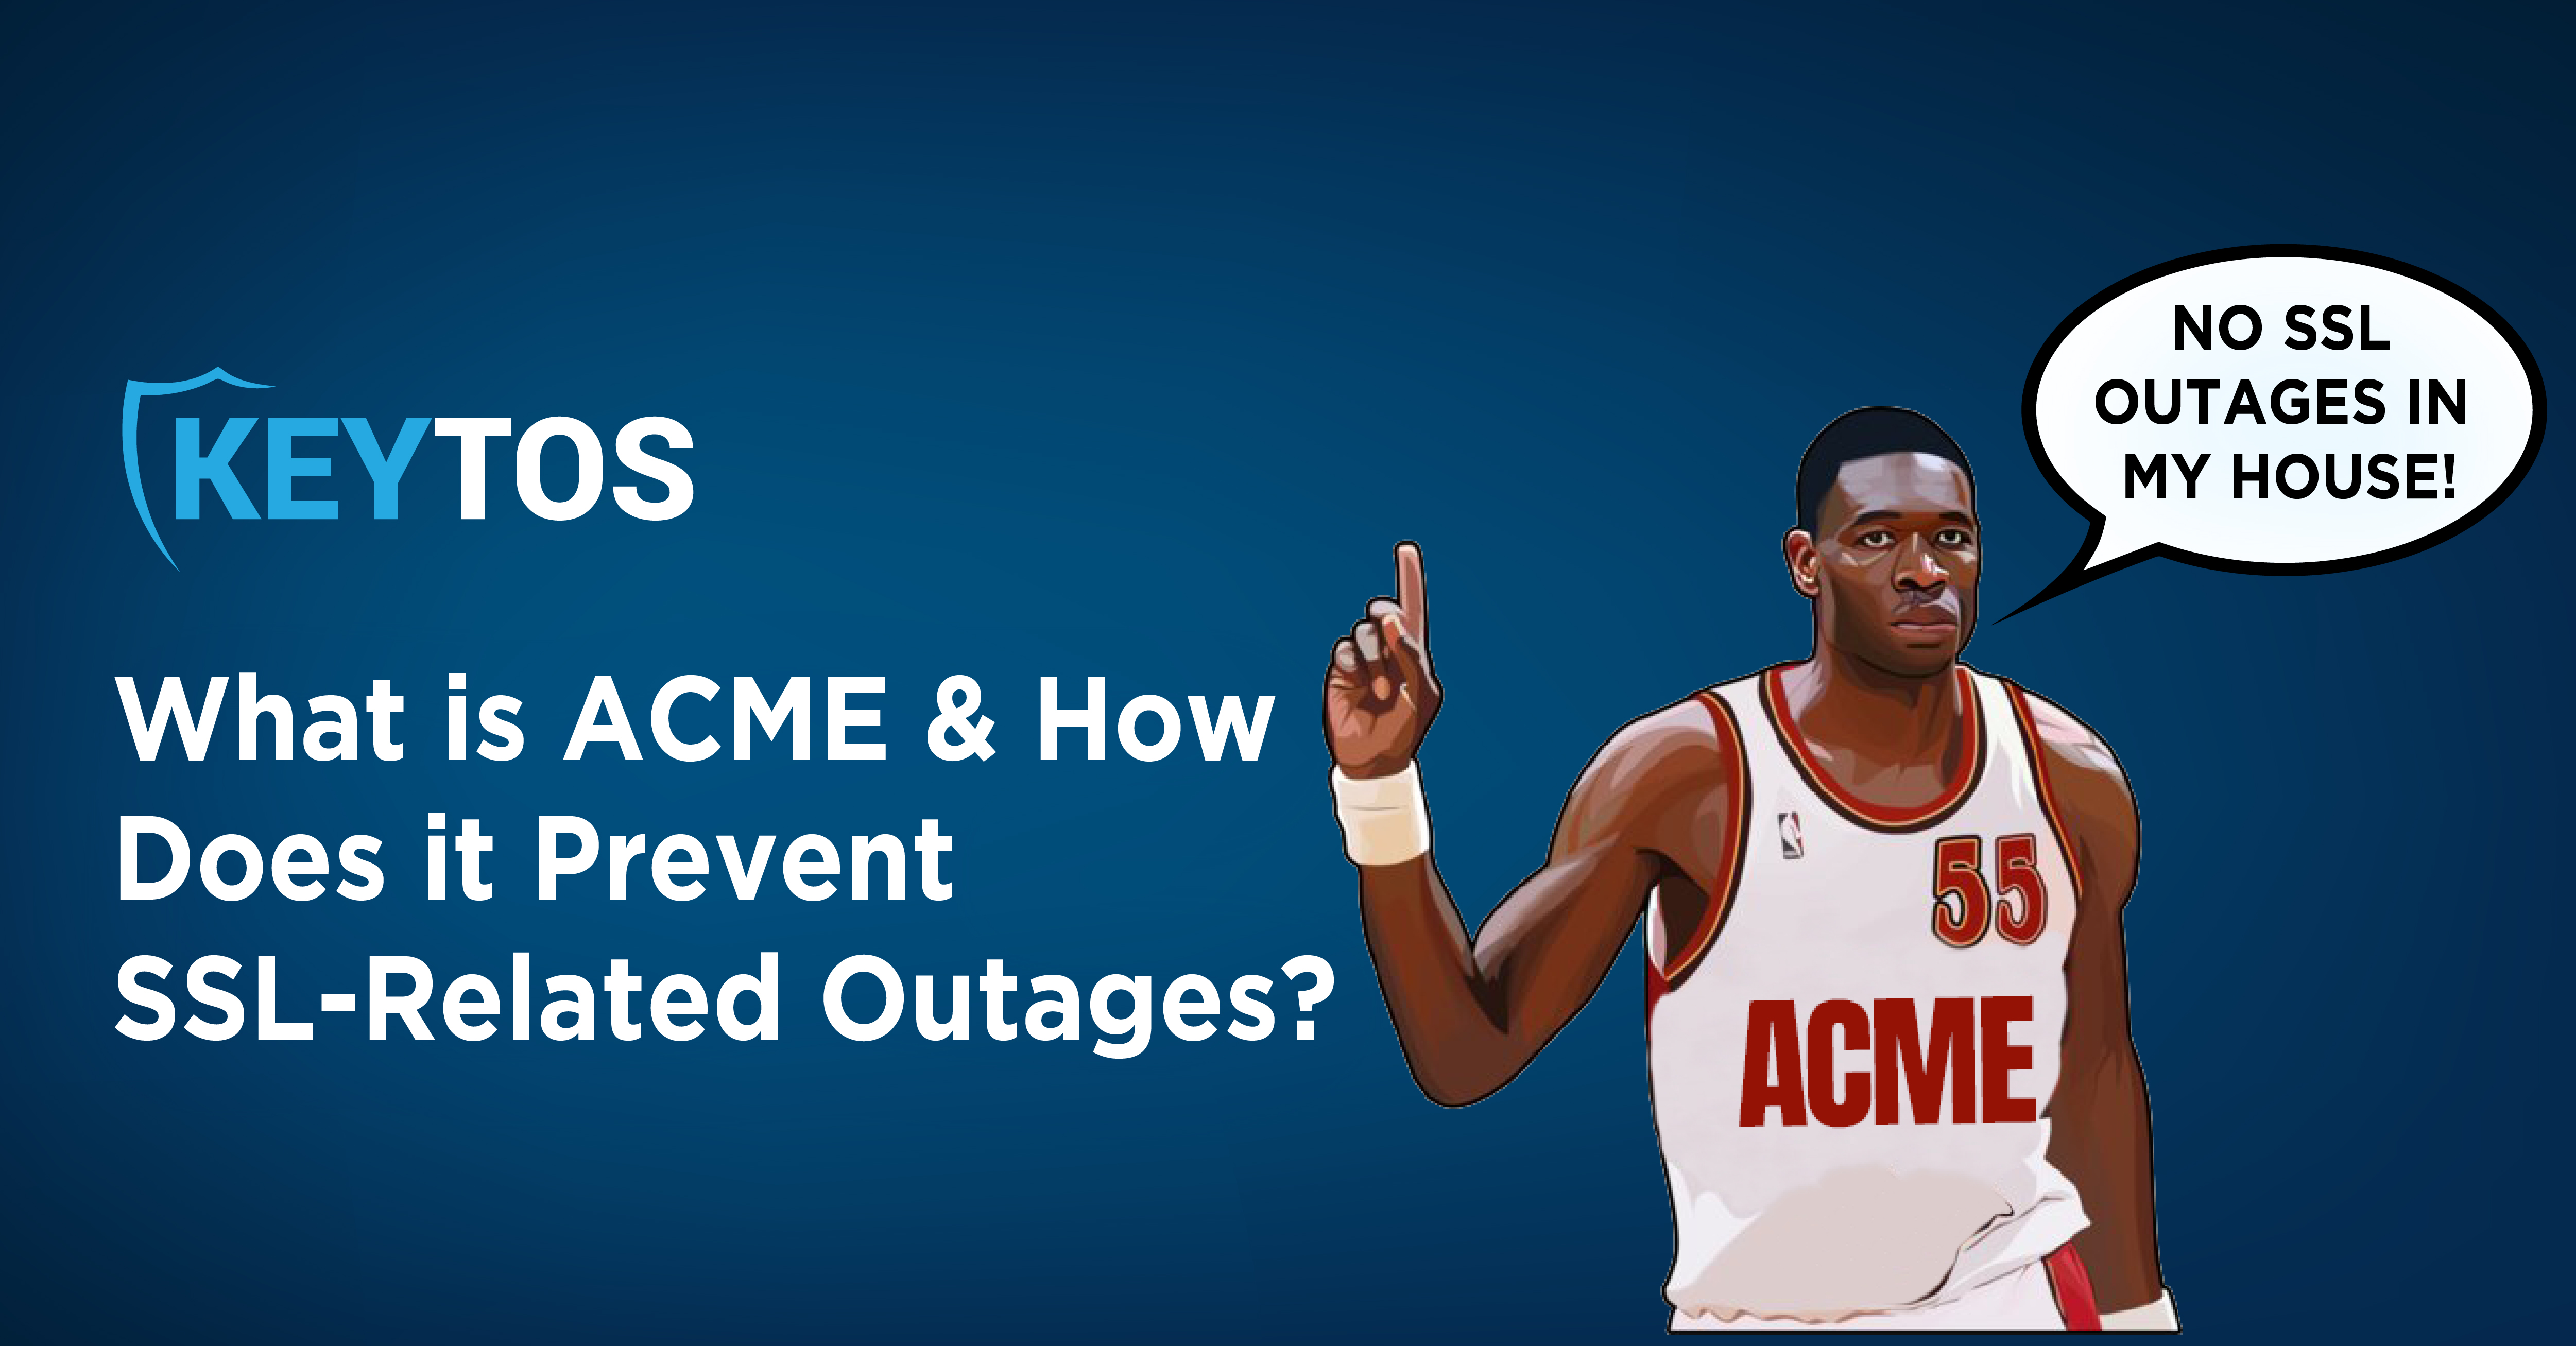 ¿Qué es ACME? ¿Cómo Previene ACME las Interrupciones de SSL?